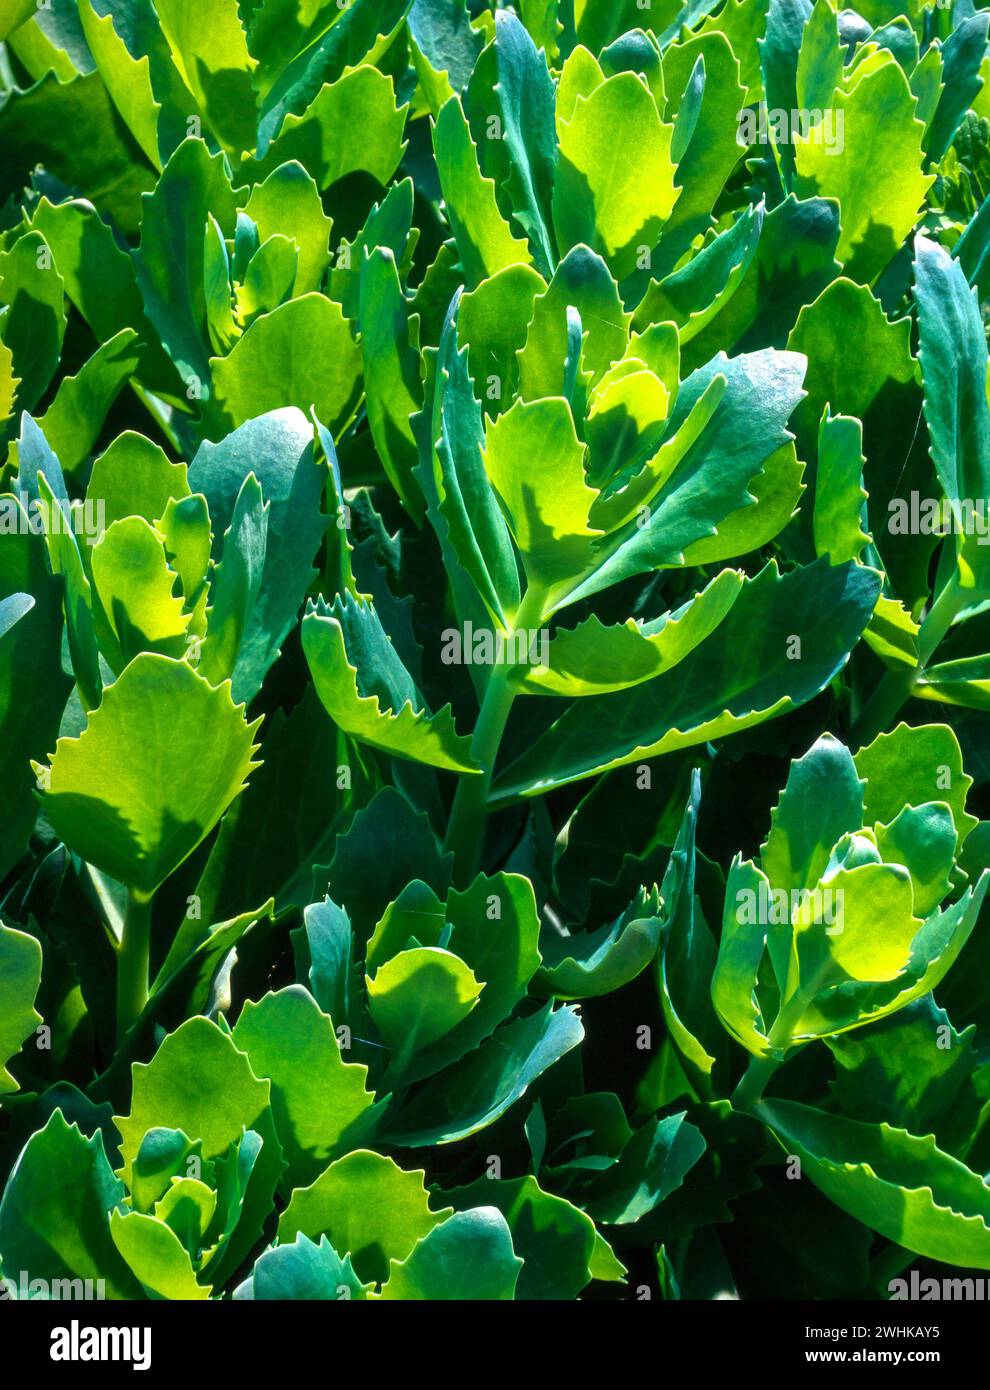 Feuilles succulentes vert vif rétroéclairées de Sedum Spectabile 'Brilliant' (Hylotelephium spectabile 'Brilliant') Banque D'Images